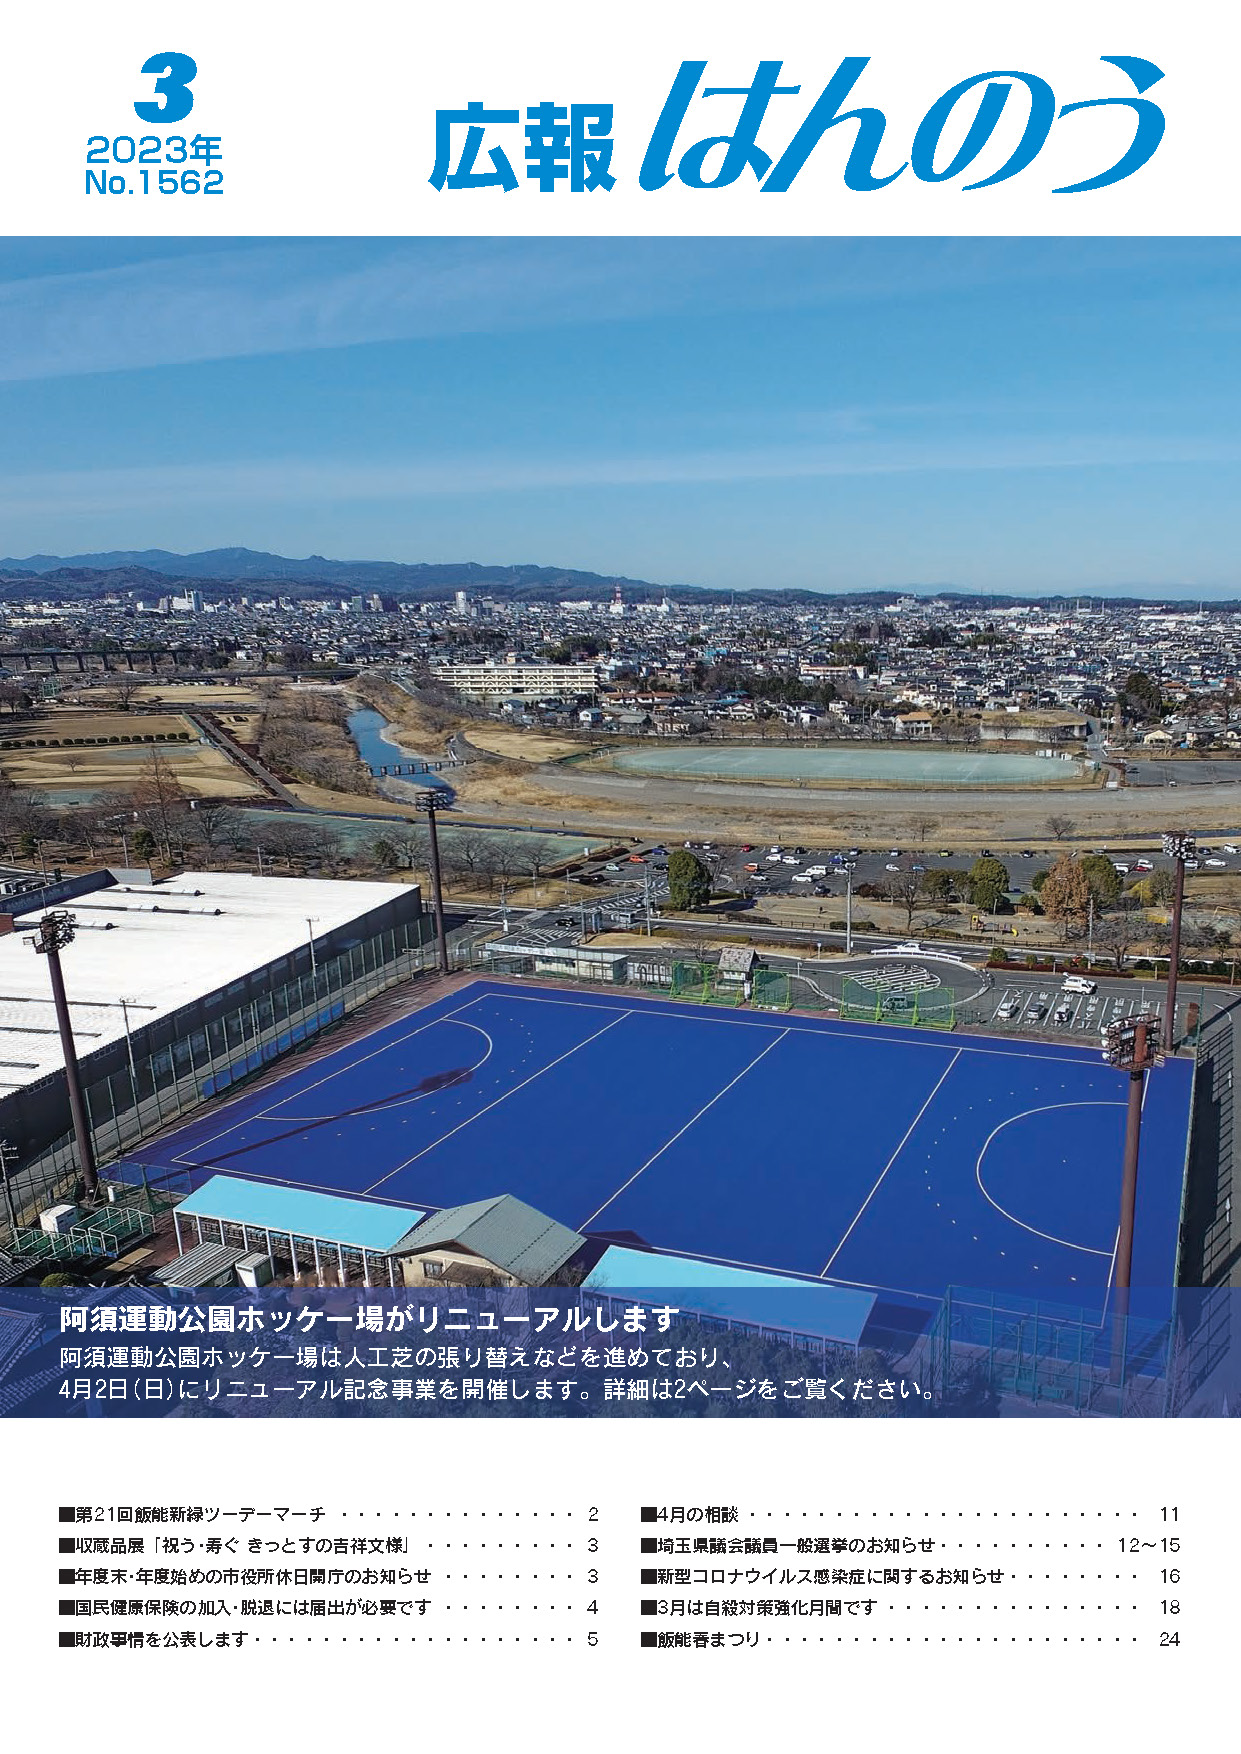 広報はんのう2023年3月1日号の表紙、リニューアルする阿須運動公園ホッケー場の写真が表示されています。